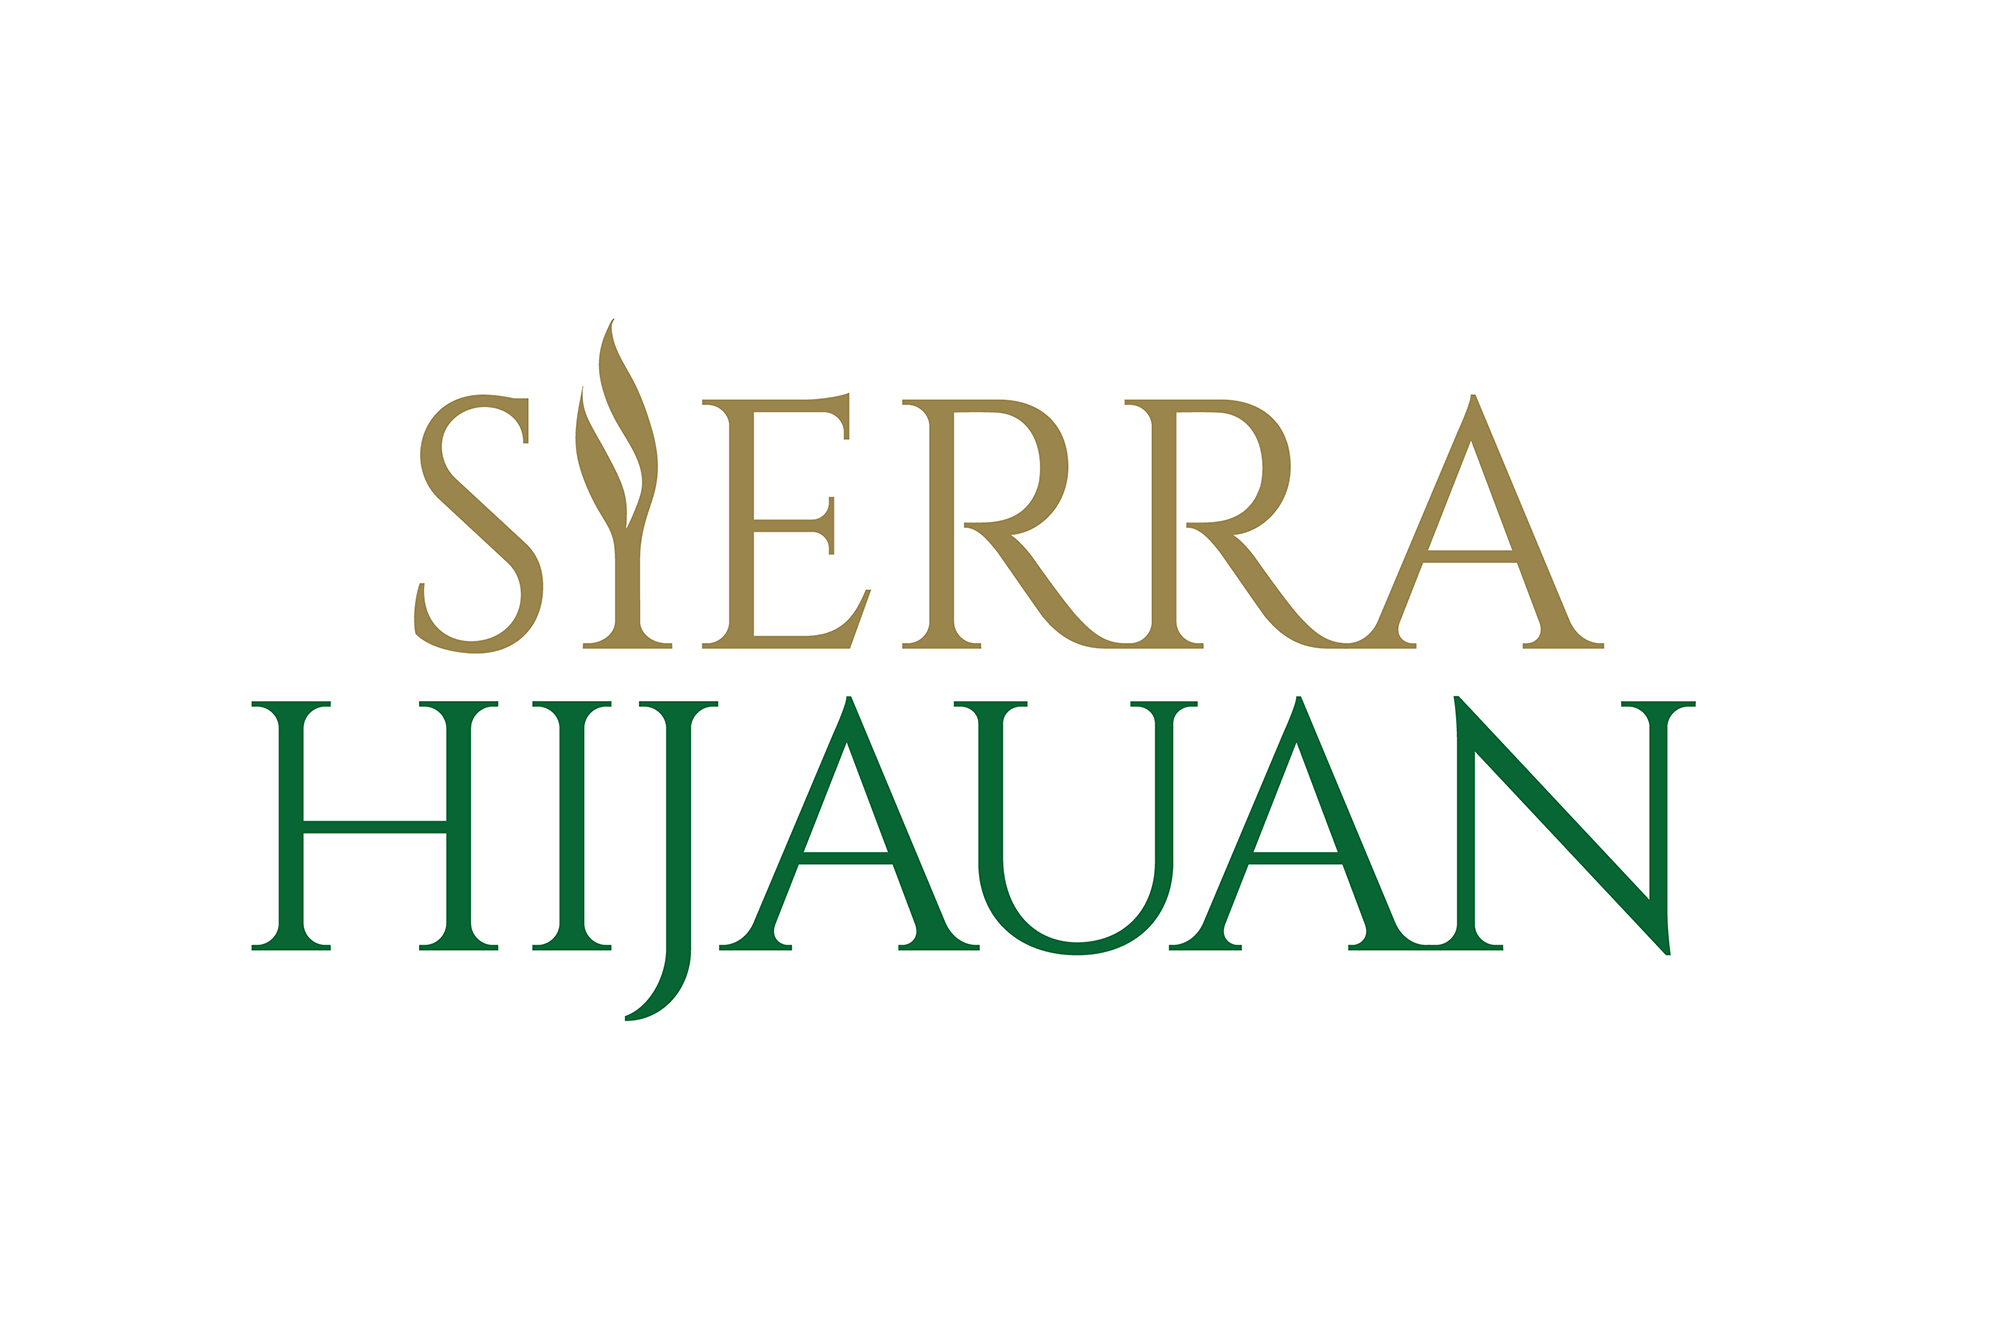 Sierra Hijauan